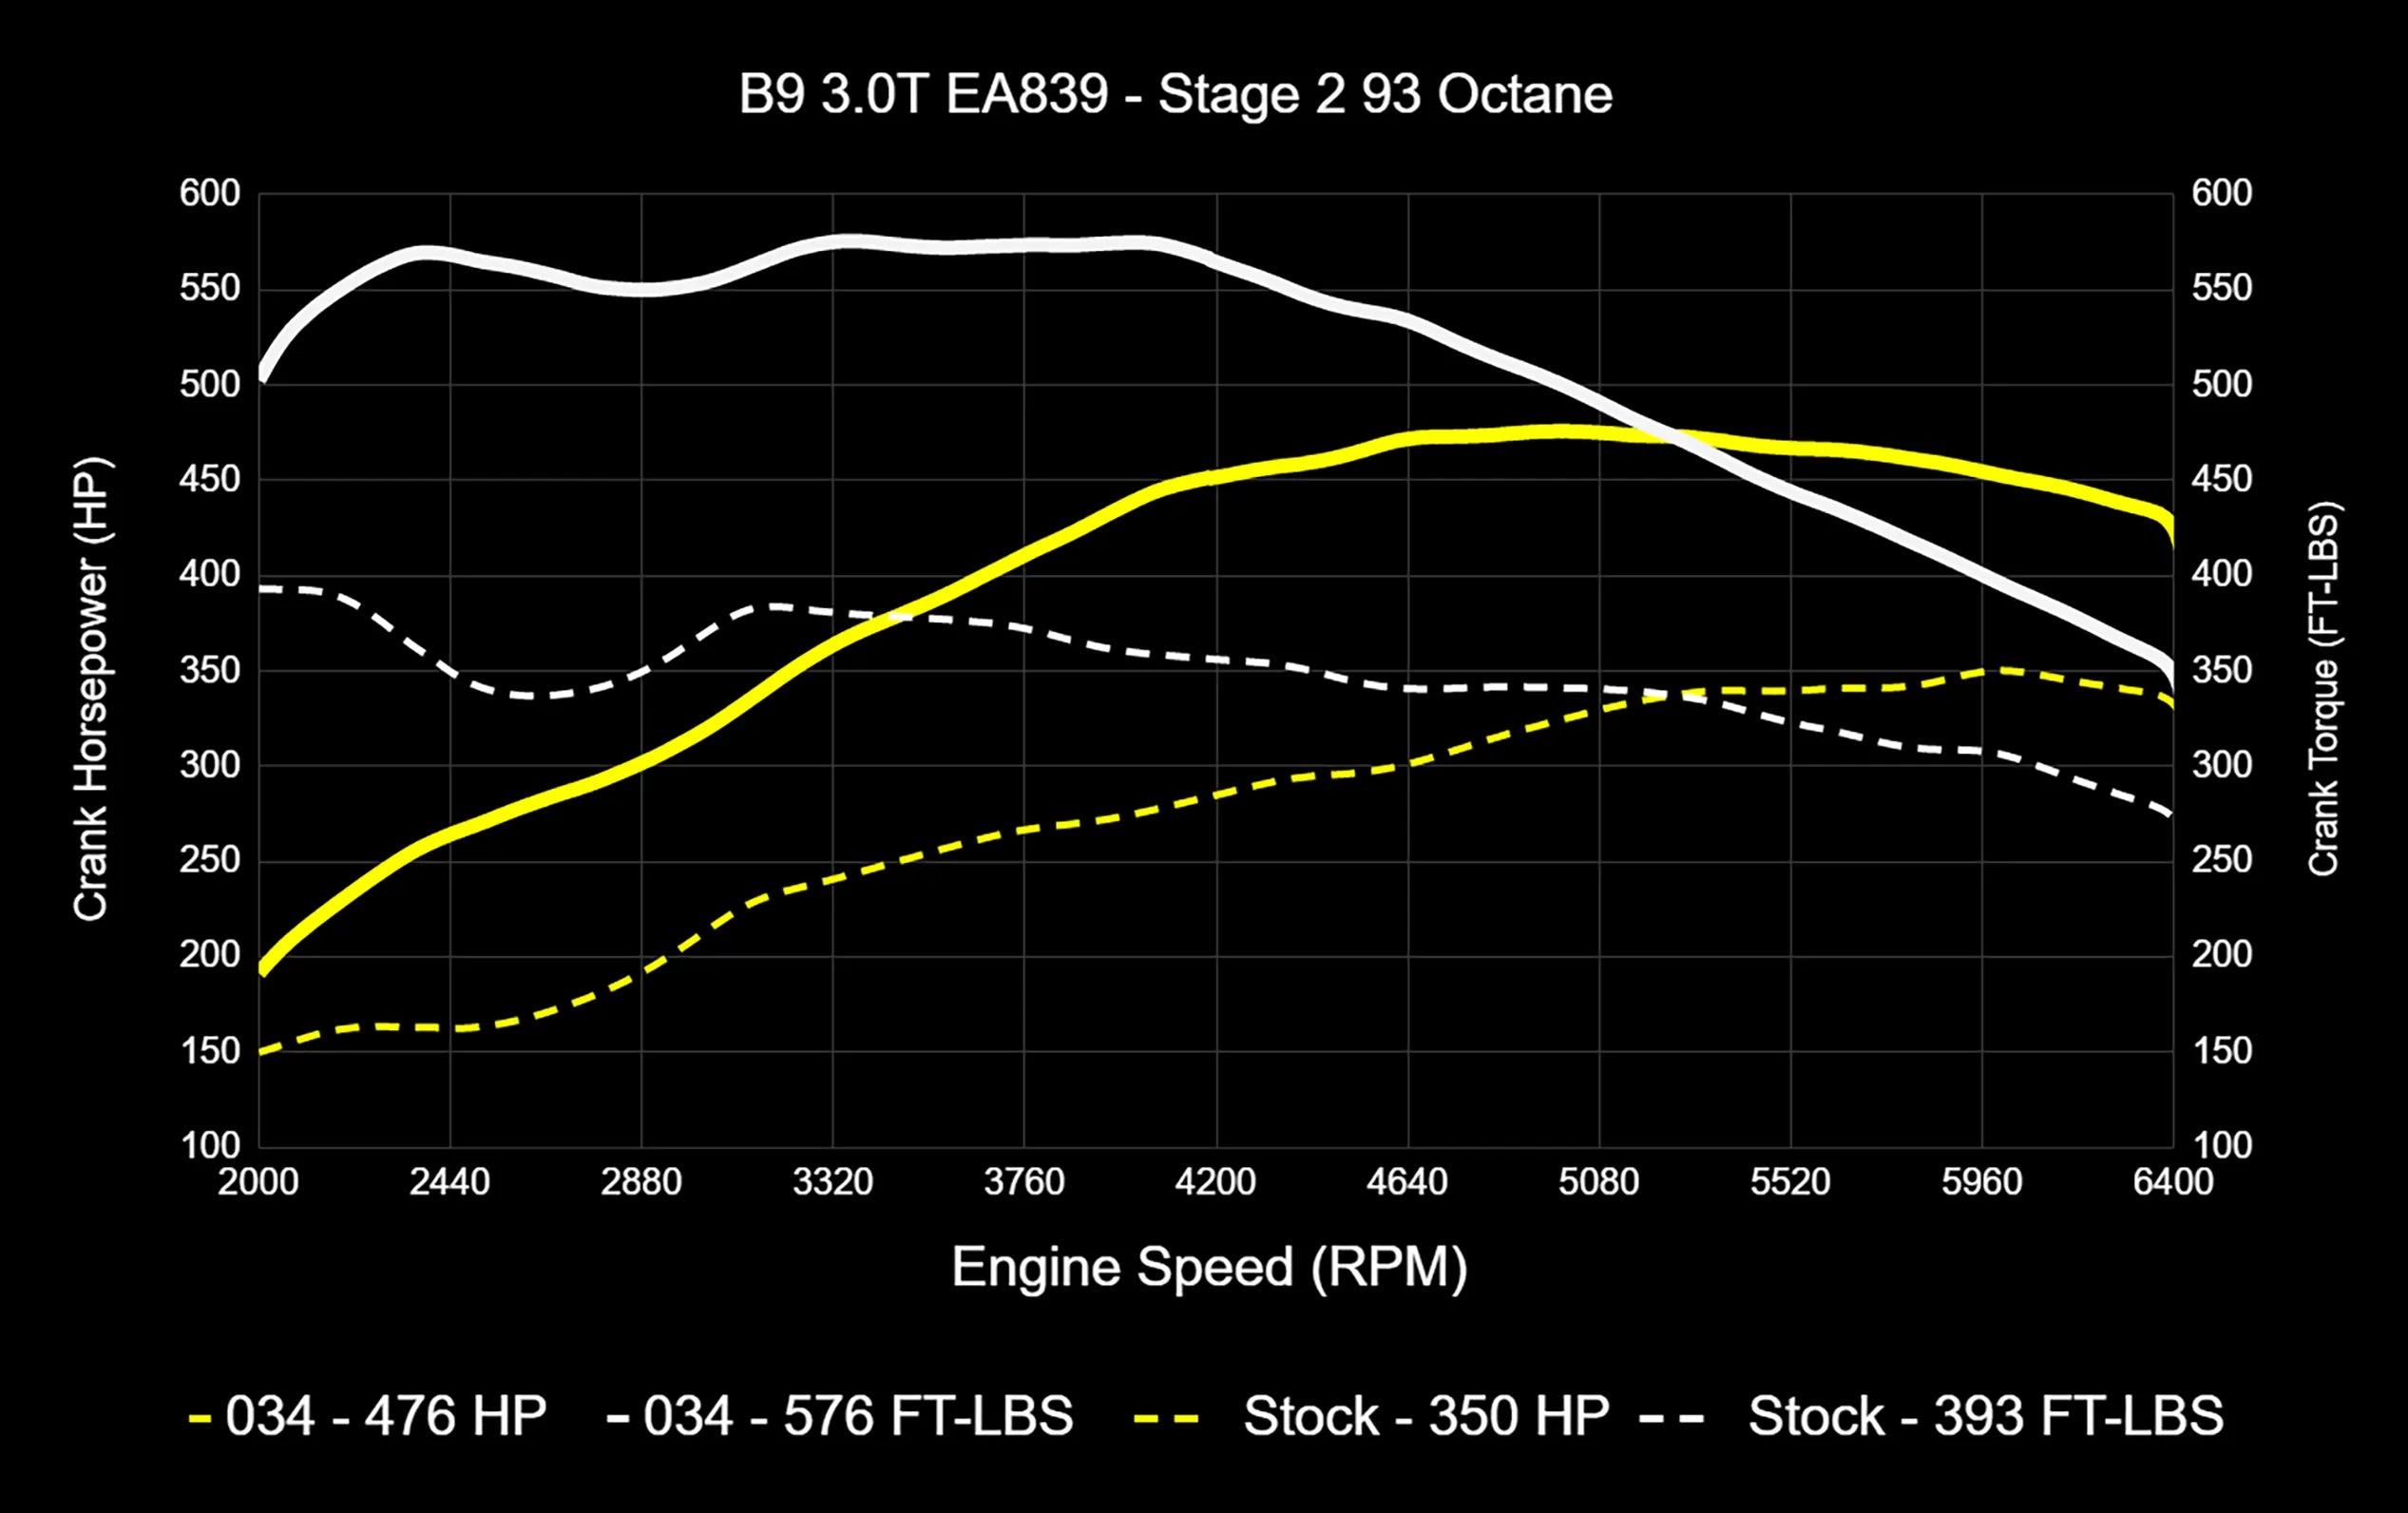 034Motorsport Dynamic+ TCU Software Upgrade - Audi B9/B9.5 S4/S5/SQ5 3.0T